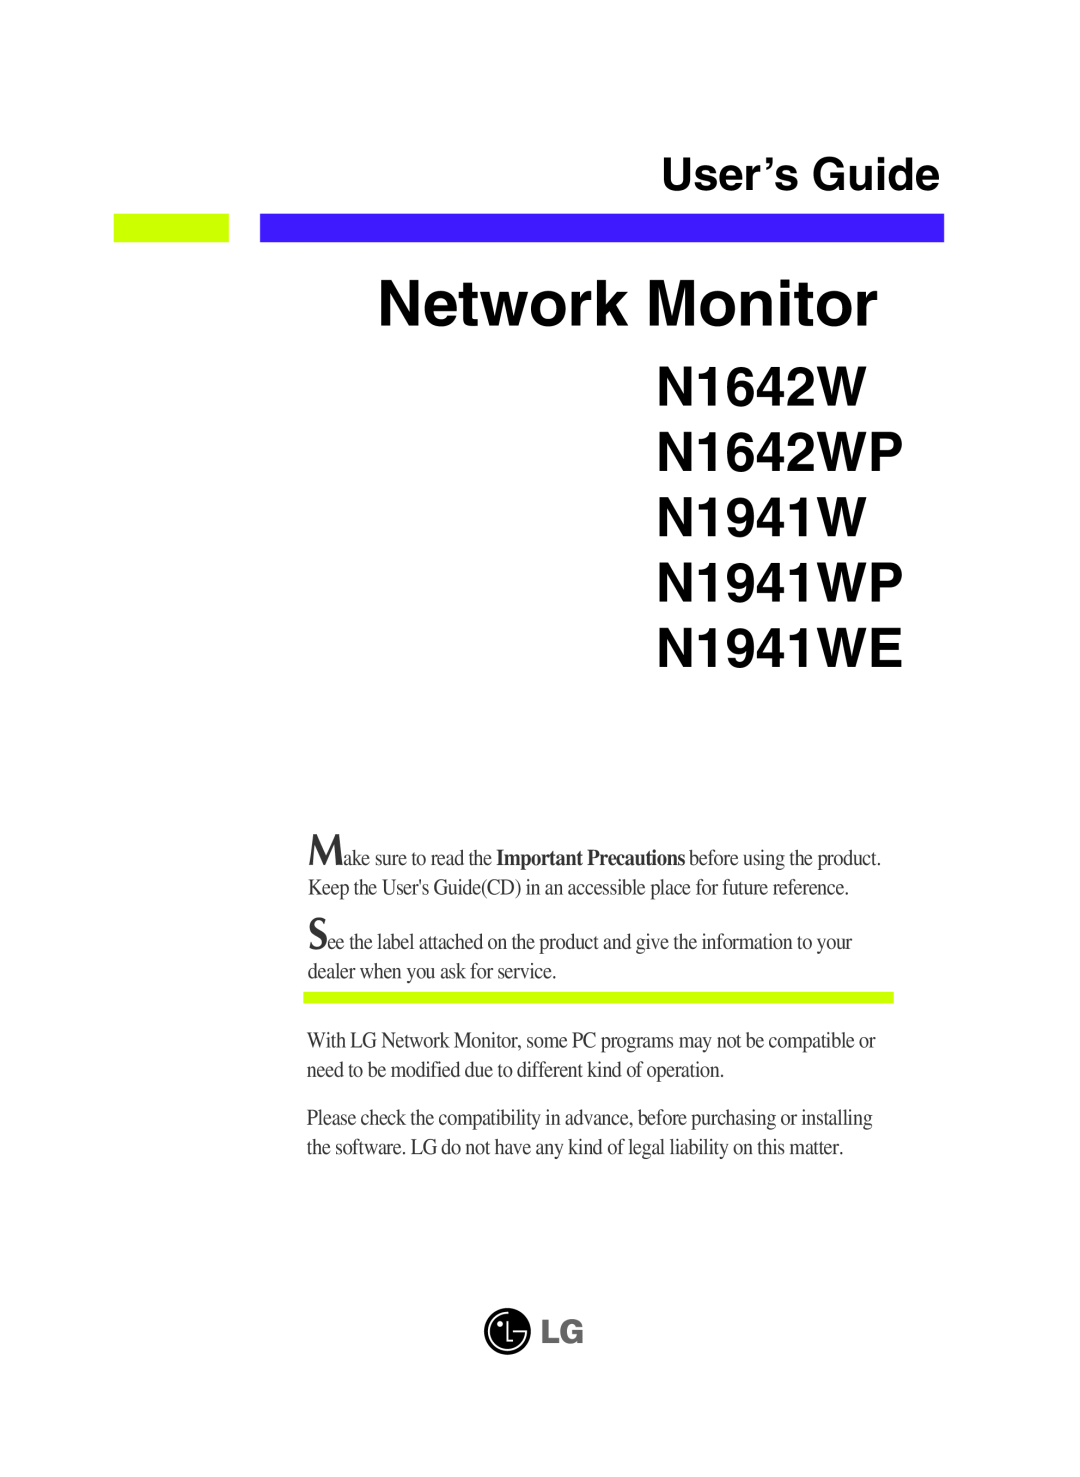 LG Electronics manual Network Monitor, N1642W N1642WP N1941W N1941WP N1941WE, User’s Guide 